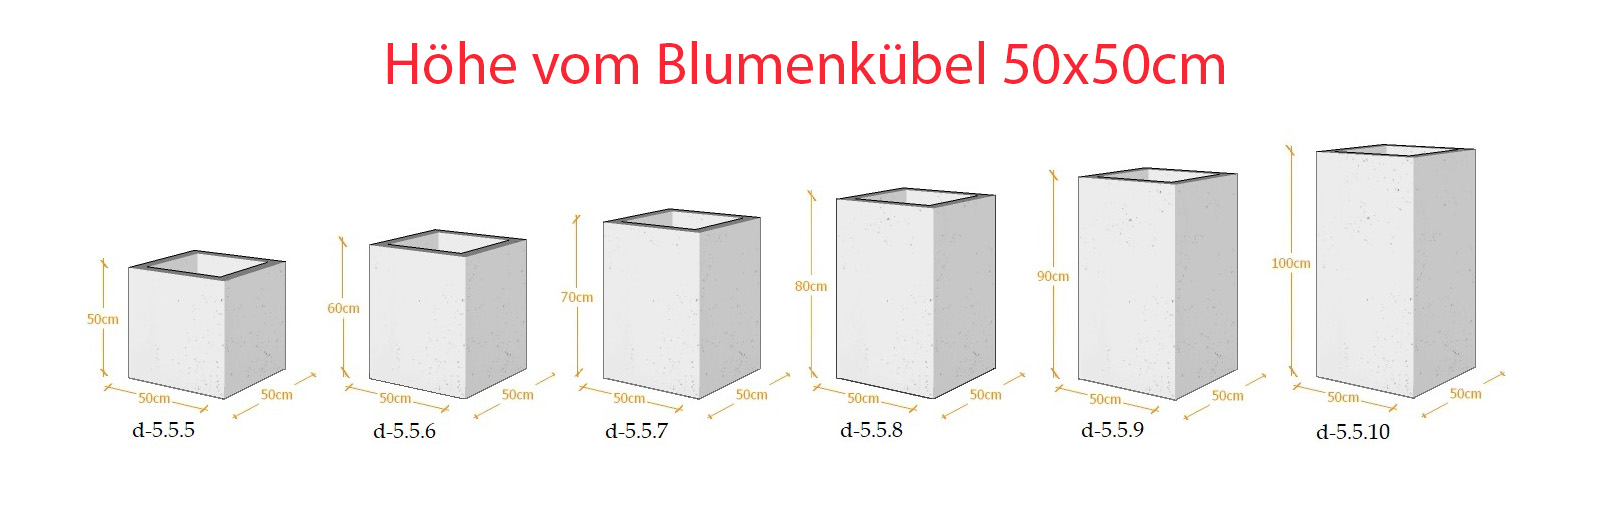 Lieferbare Abmessungen - Blumenkübel aus Architekturbeton 50x50cm x (50h-60h-80h-100h)